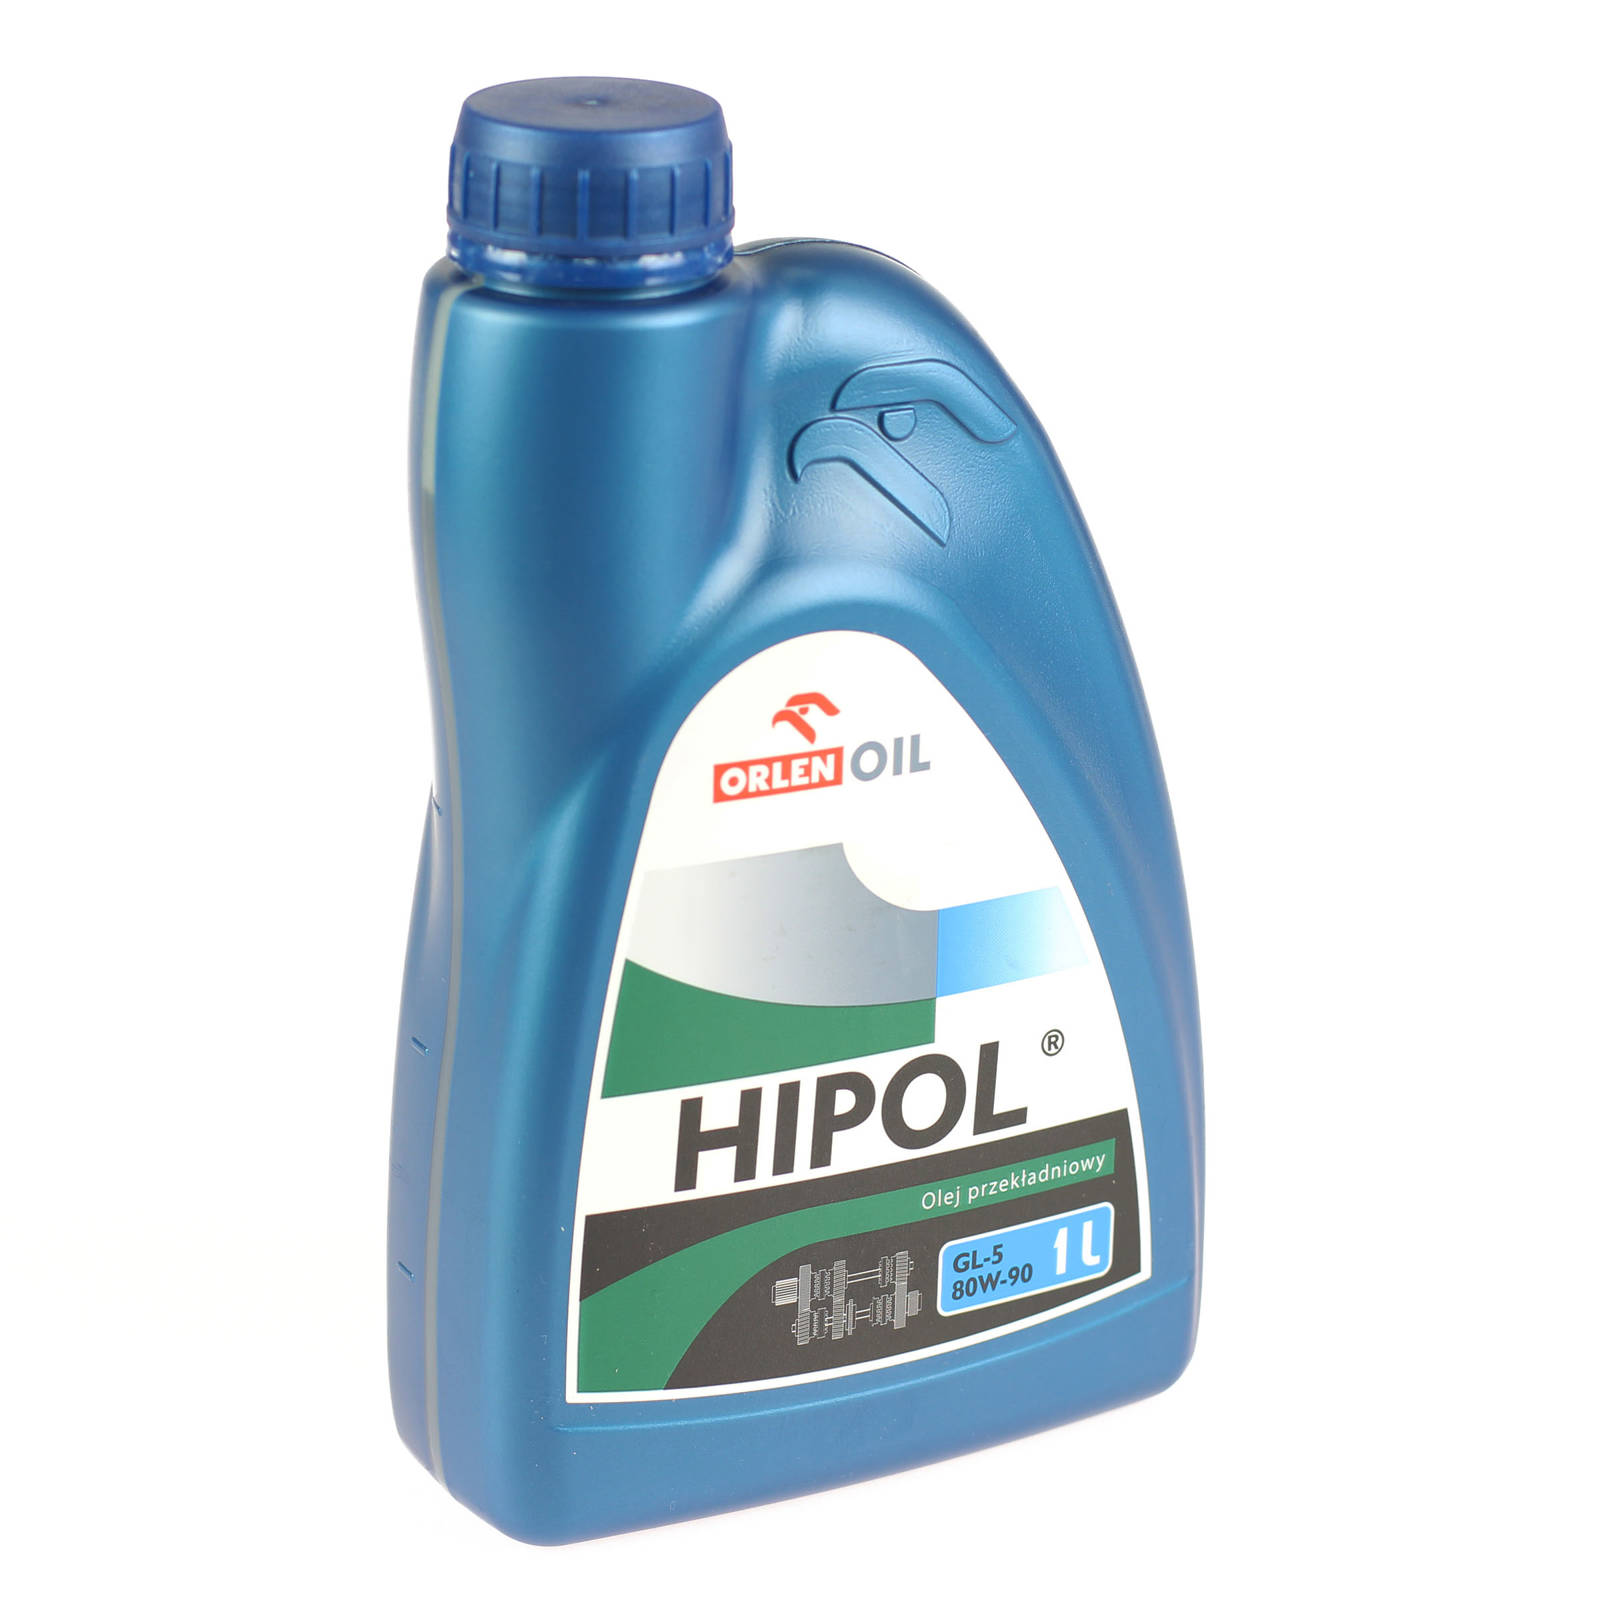 Трансмиссионное масло Orlen HIPOL GL-5 80W-90 1л.